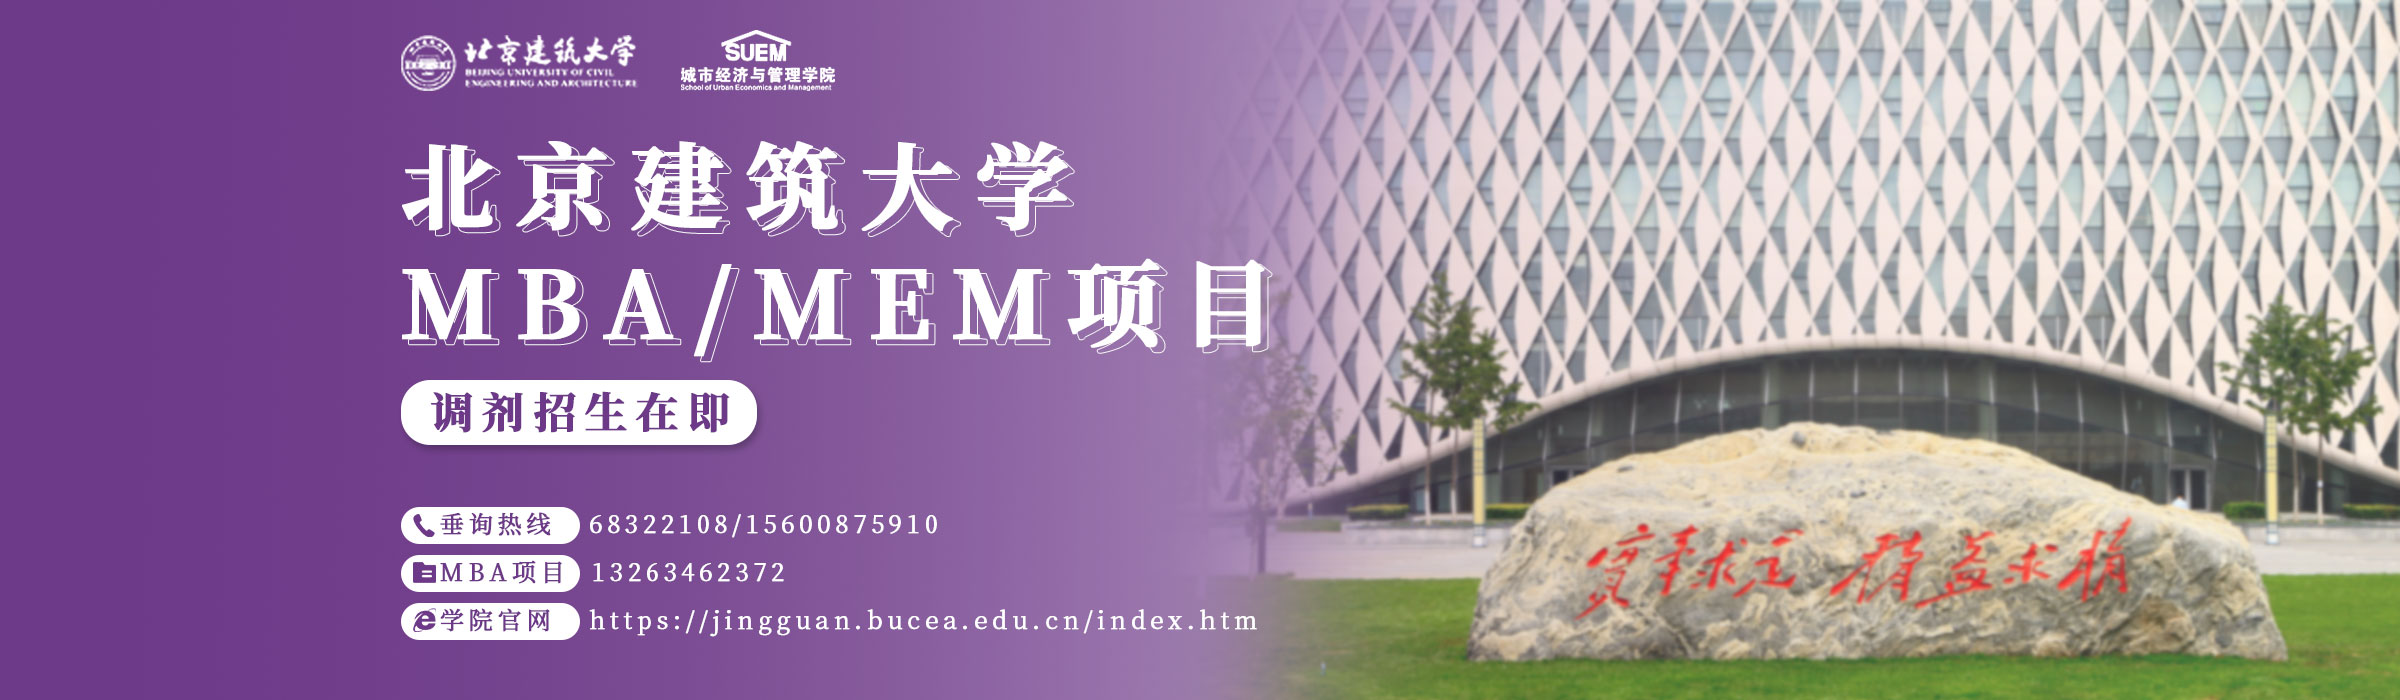 北京建筑大学MBA